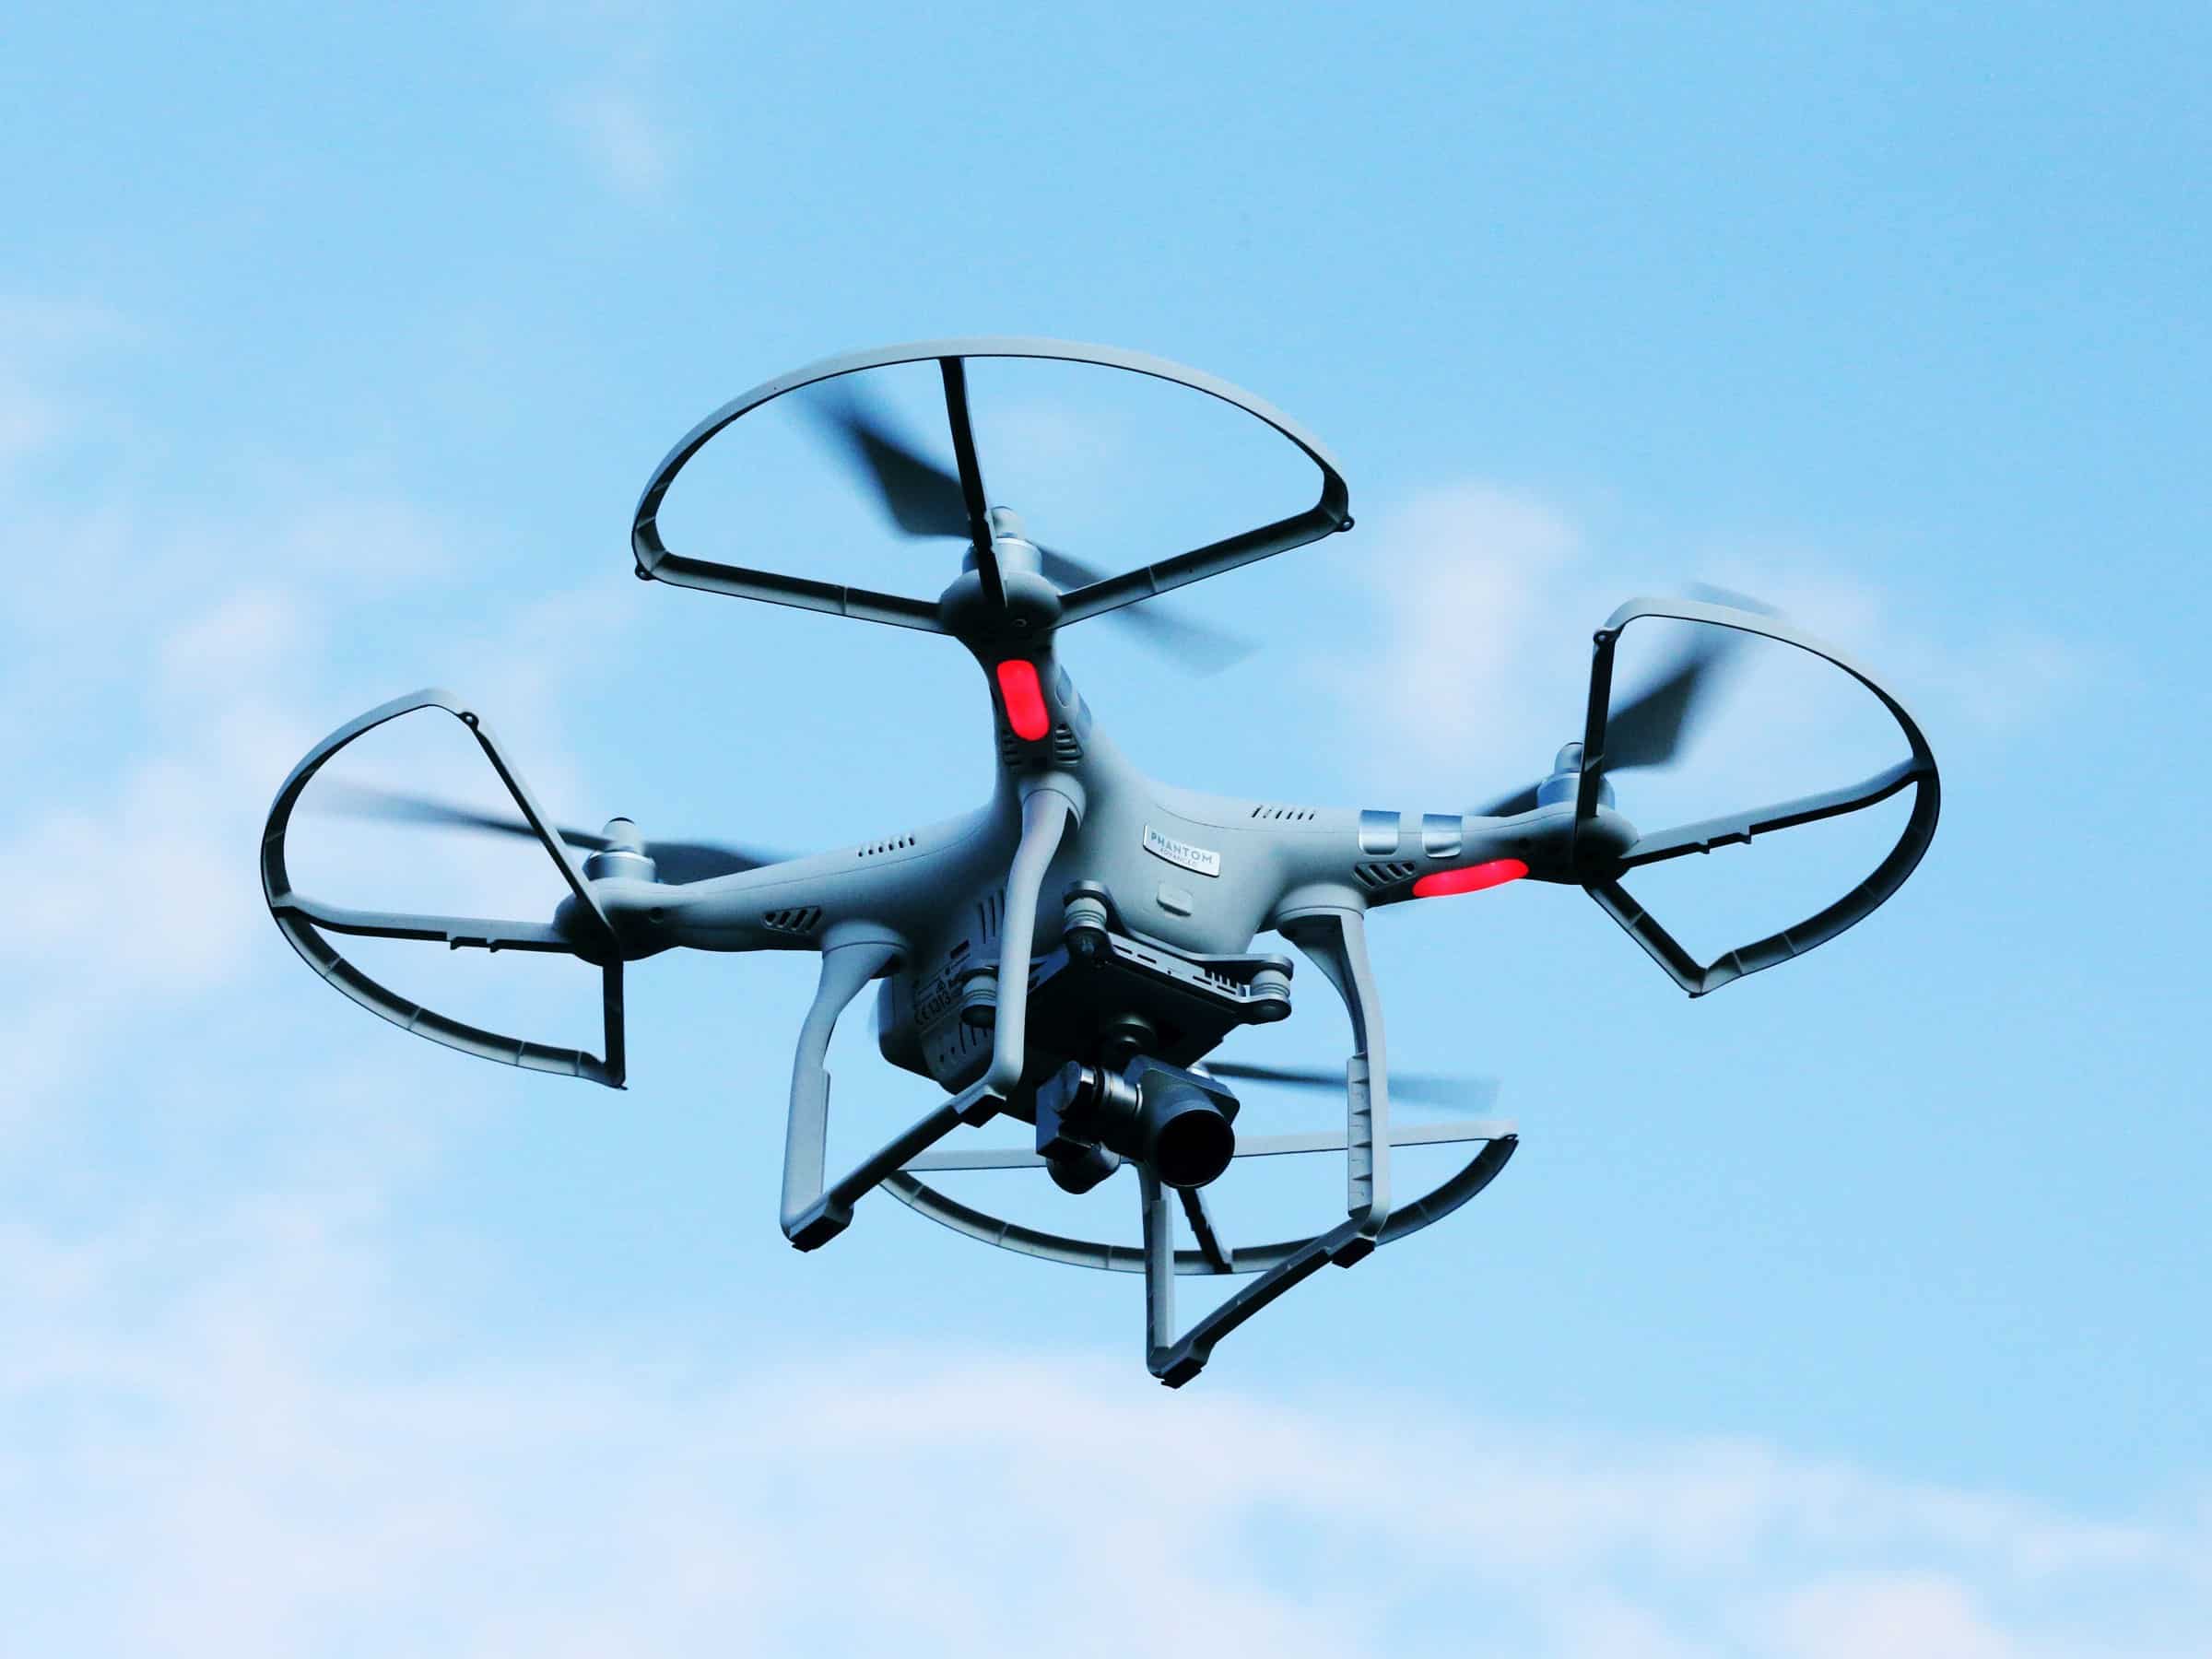 La legalidad de las multas por drones se cuestiona por carecer de garantías jurídicas | Últimas Noticias y Actualidad Jurídica | El Rincon Legal